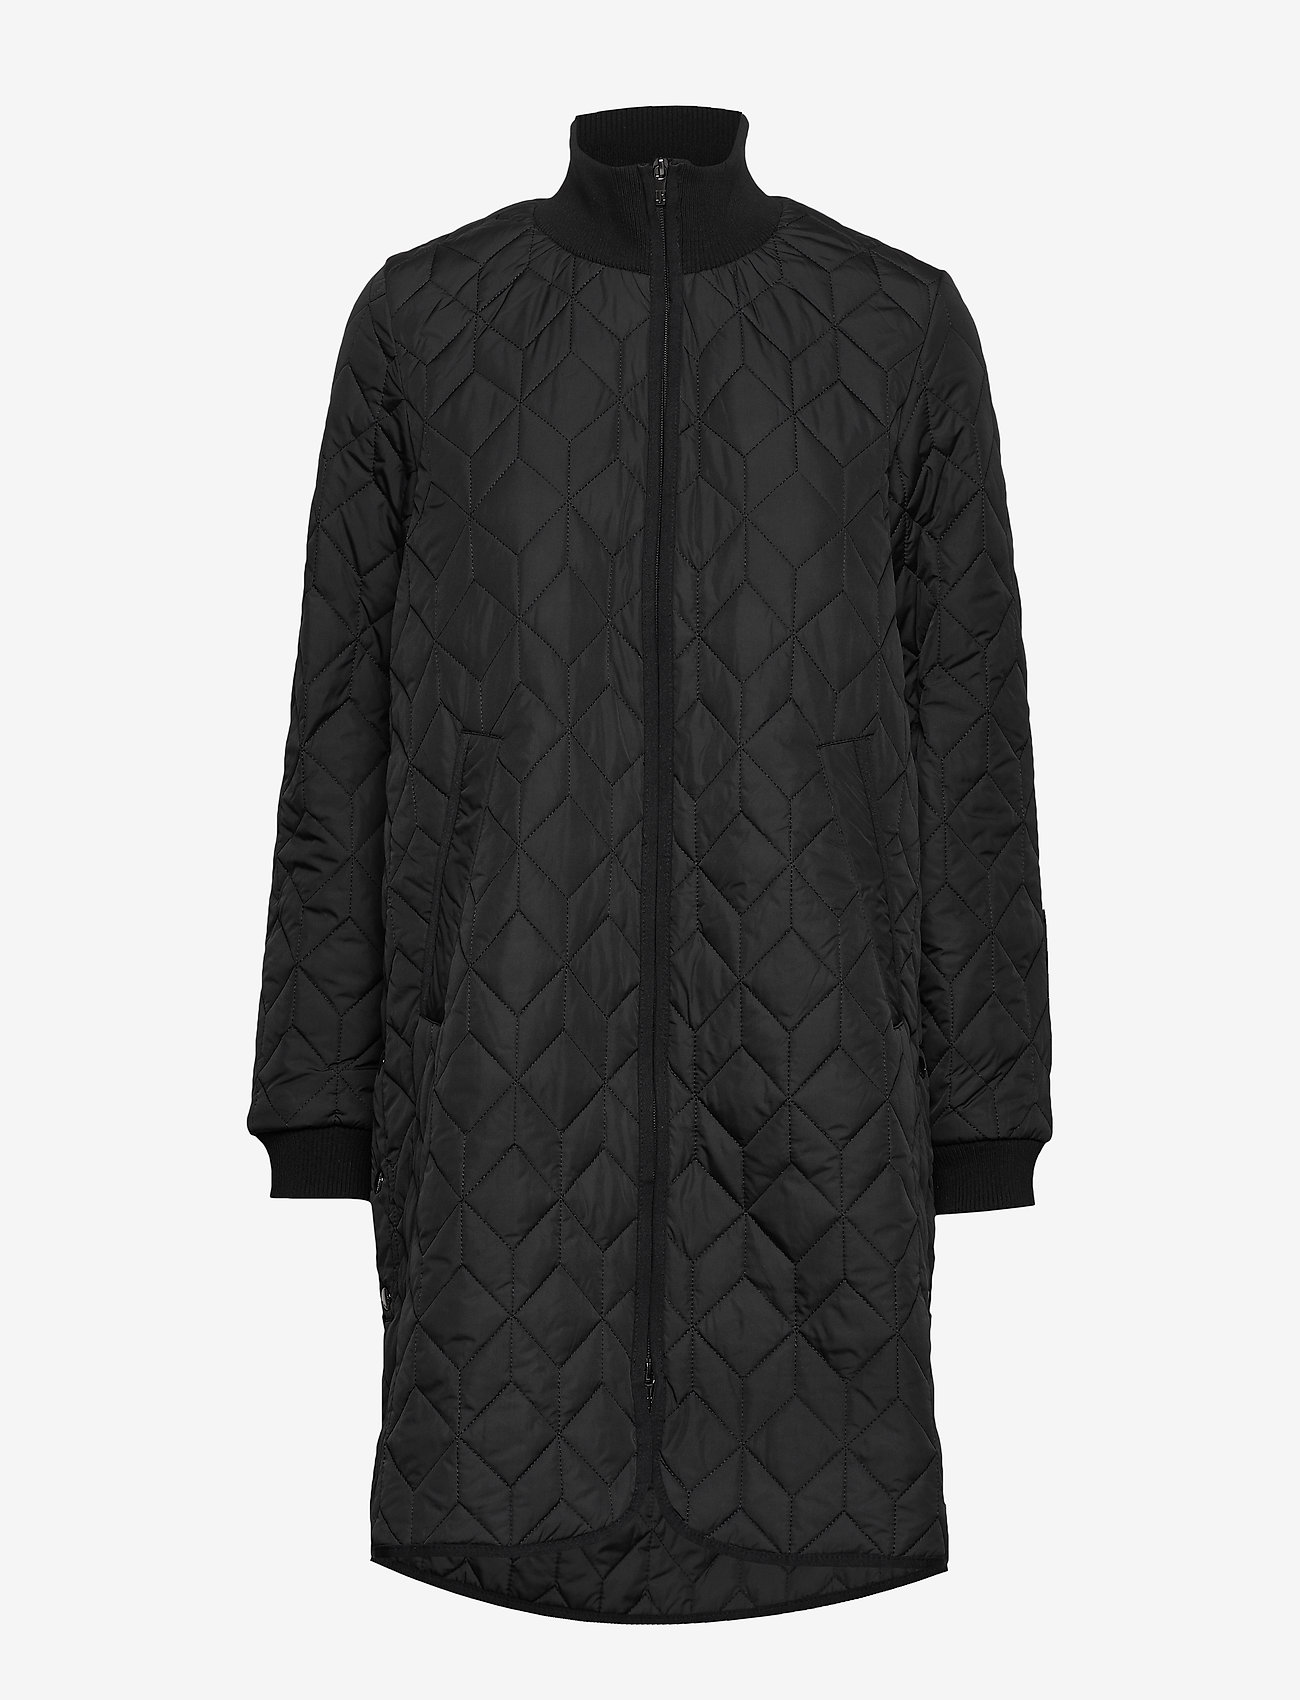 Ilse Jacobsen - Outdoor coat - spring jackets - black - 1